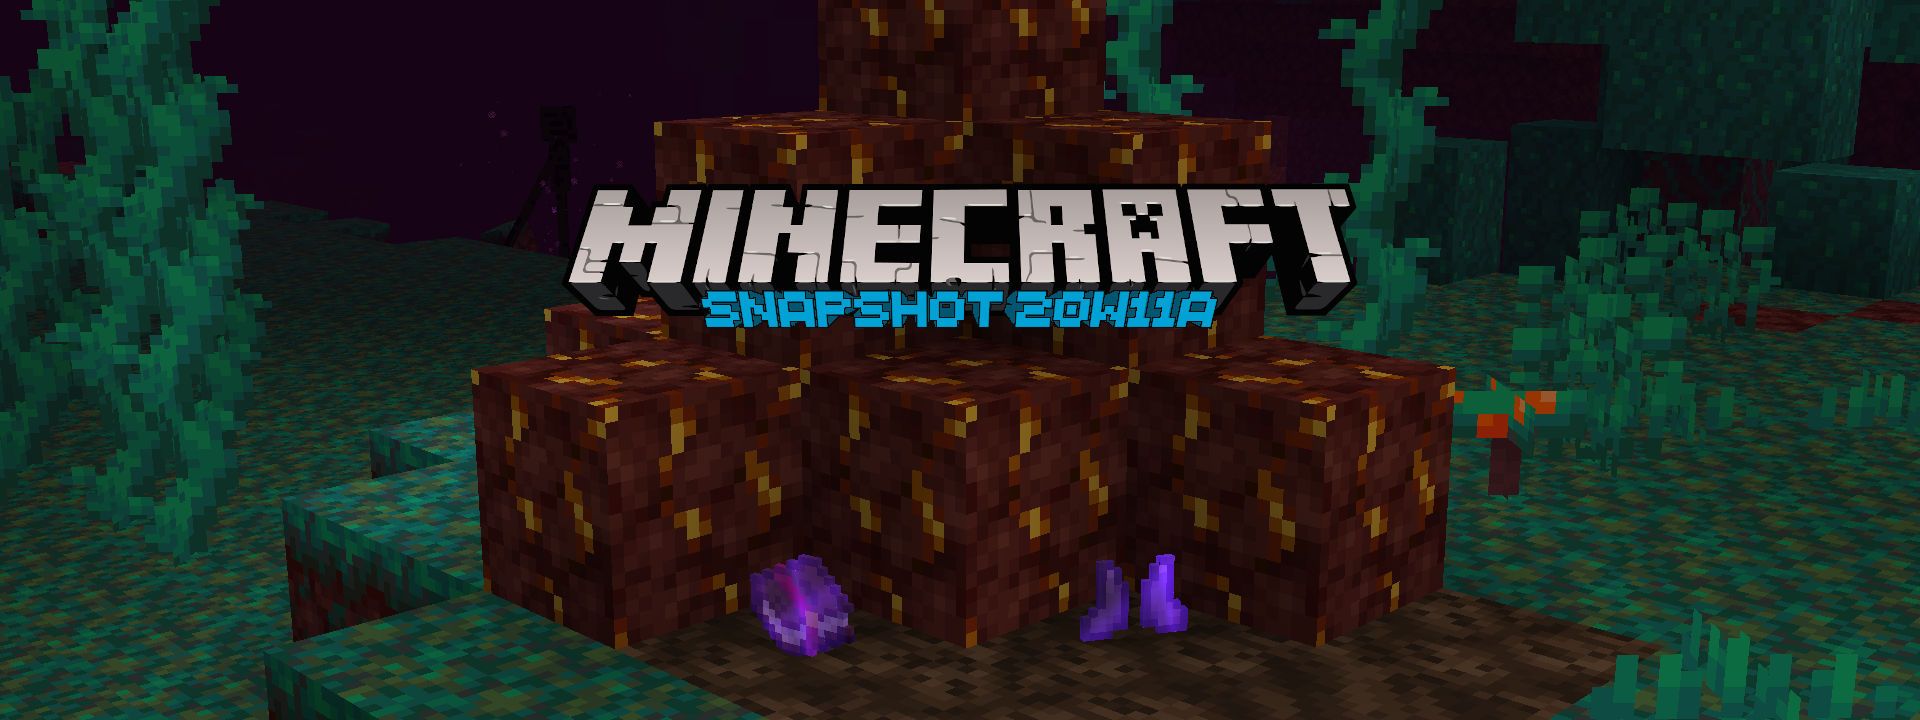 Minecraft Snapshot 20w11a